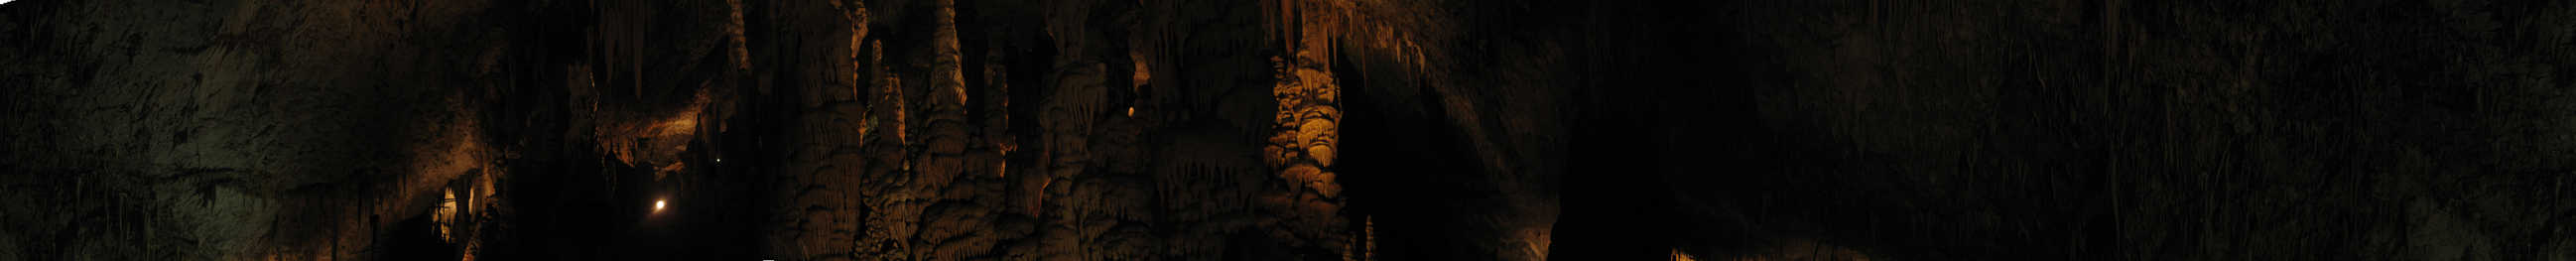 28171 original - Сталактитовая пещера Сорек